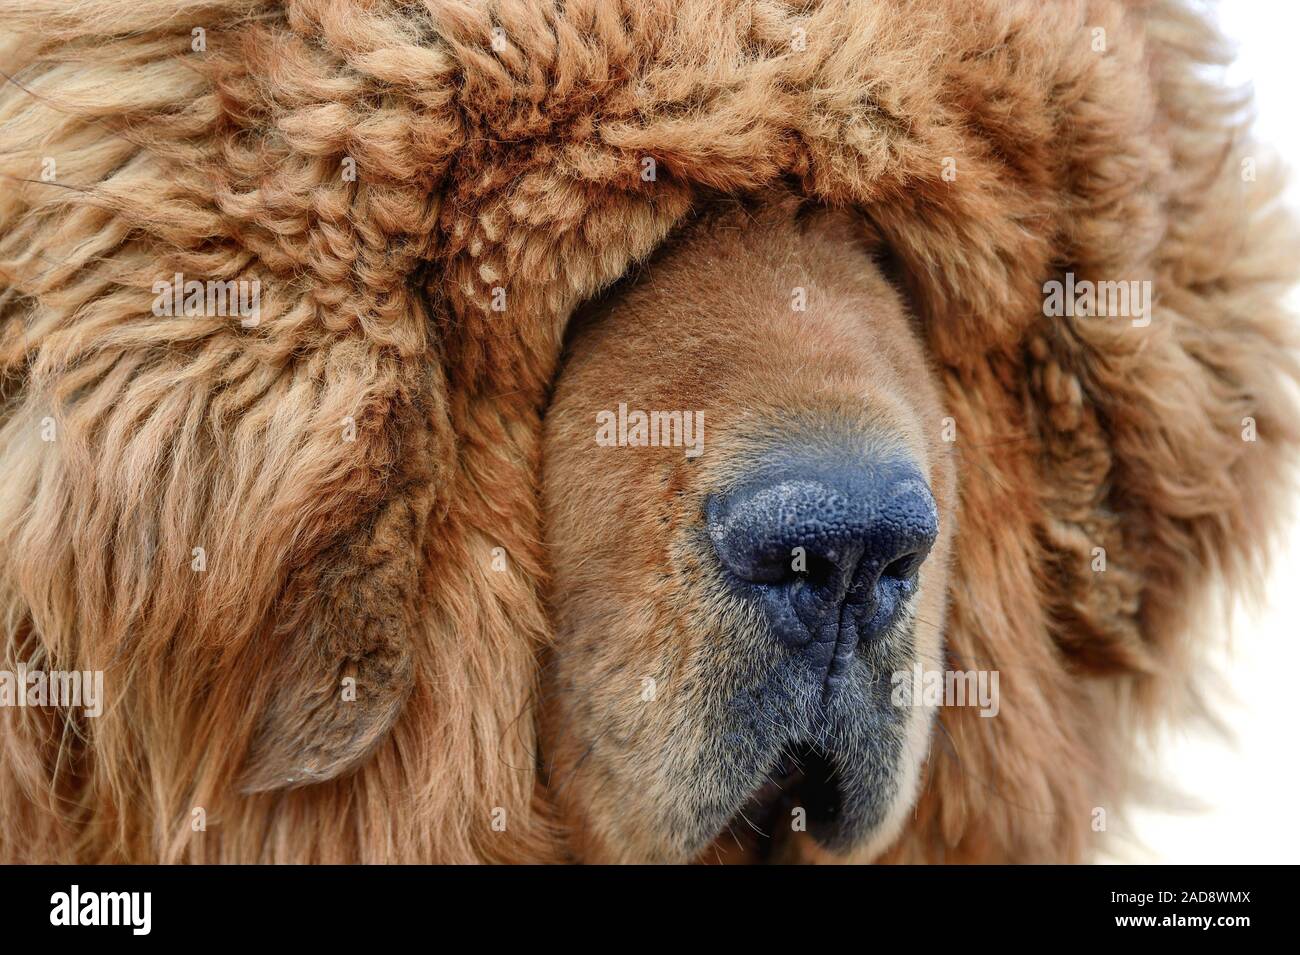 Ein Porträt eines braunen Tibetisch Dogge schlägt vor Blendung Fell eine Herausforderung für diese treuen Wachhunden werden kann. Stockfoto